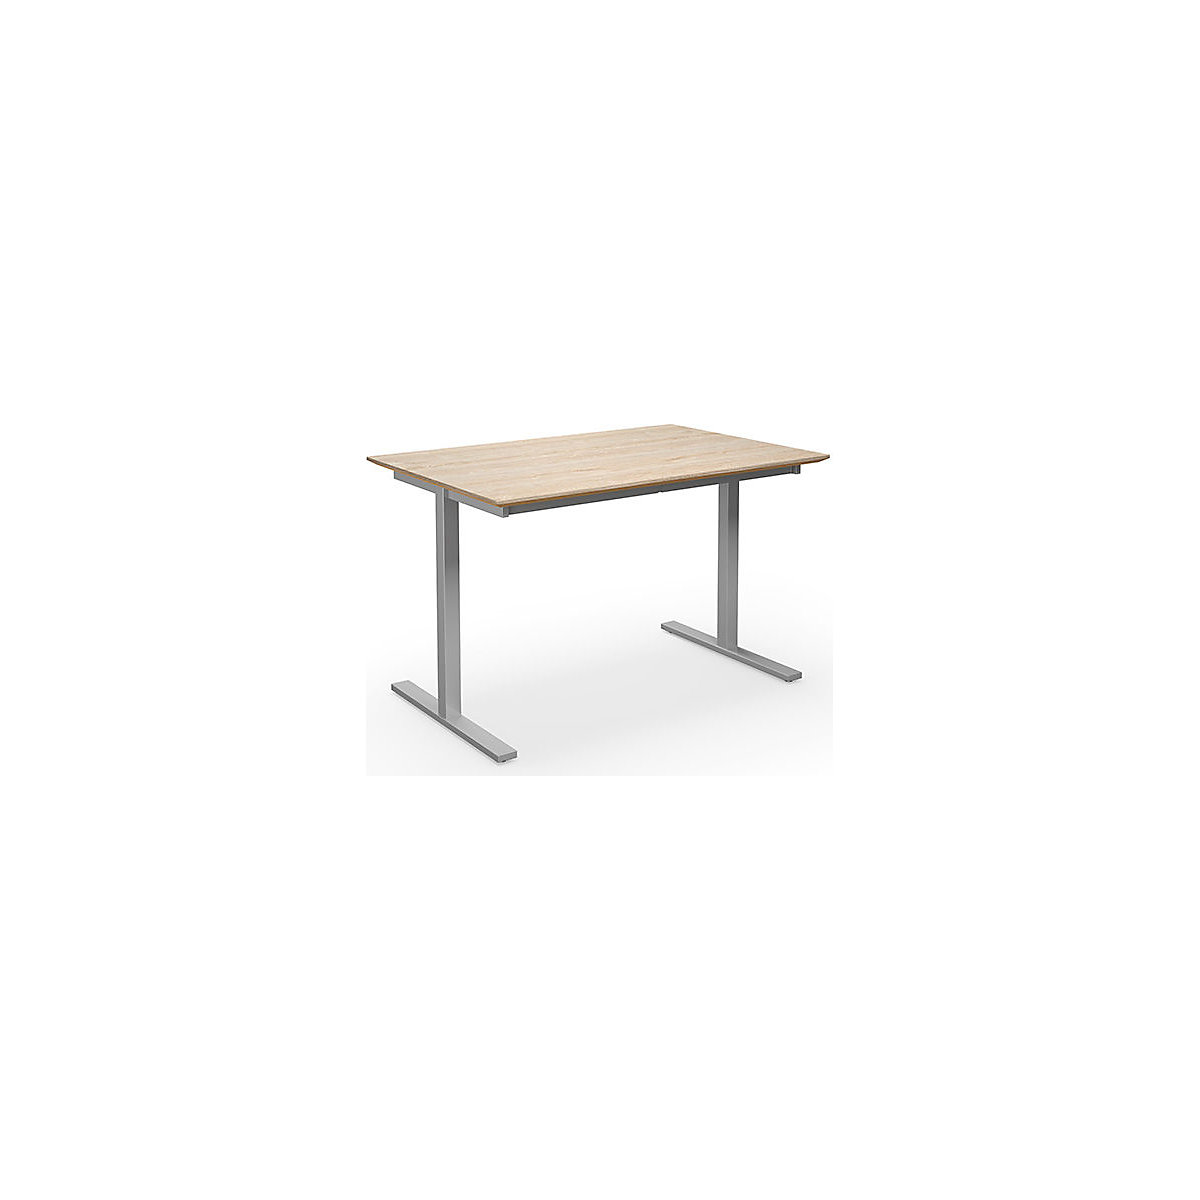 DUO-T Trend multi-purpose desk, straight tabletop